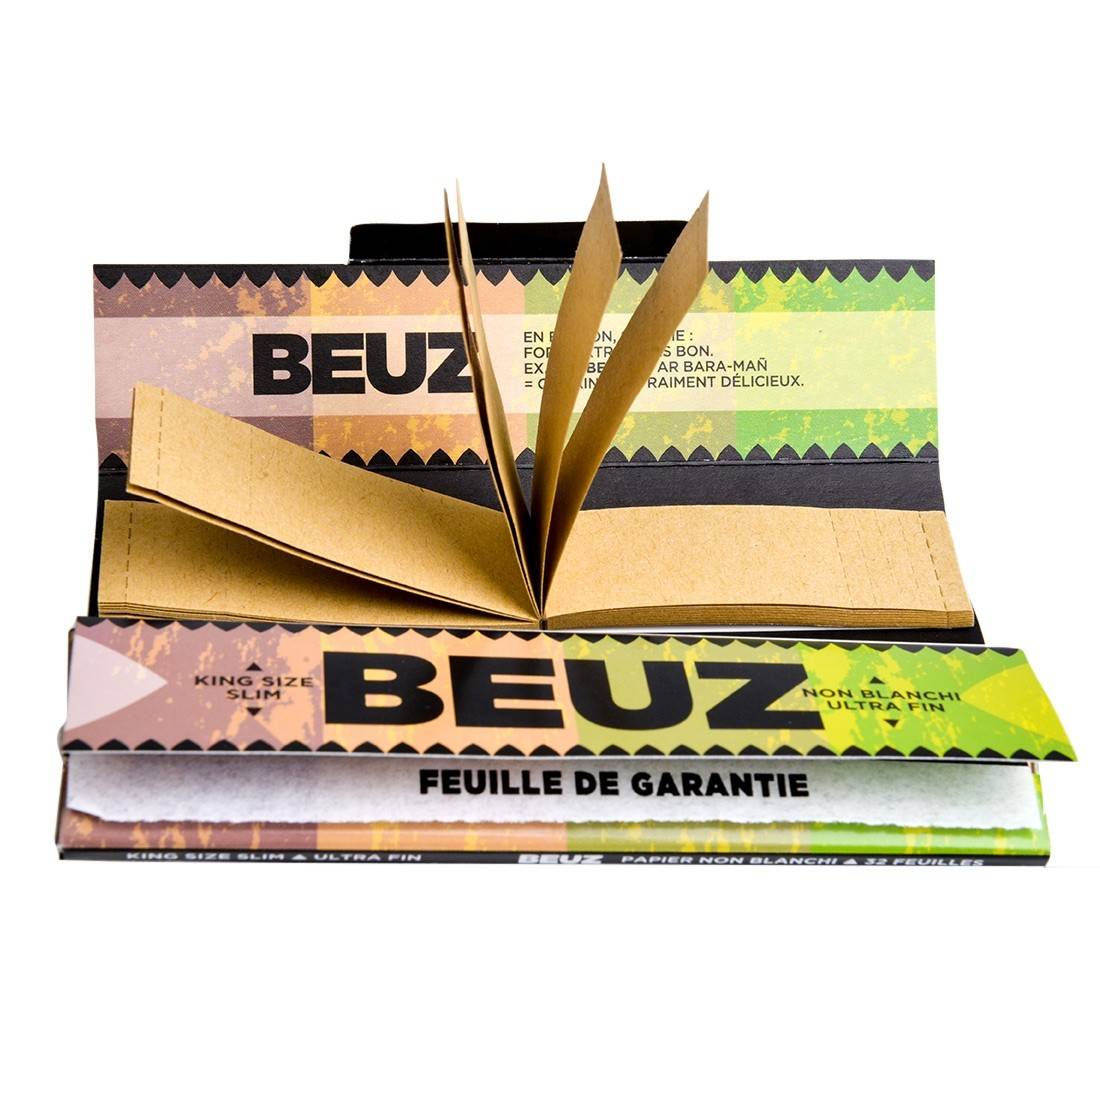 Feuille à rouler Beuz Brown Slim et Tips x 24 - PW Distribution